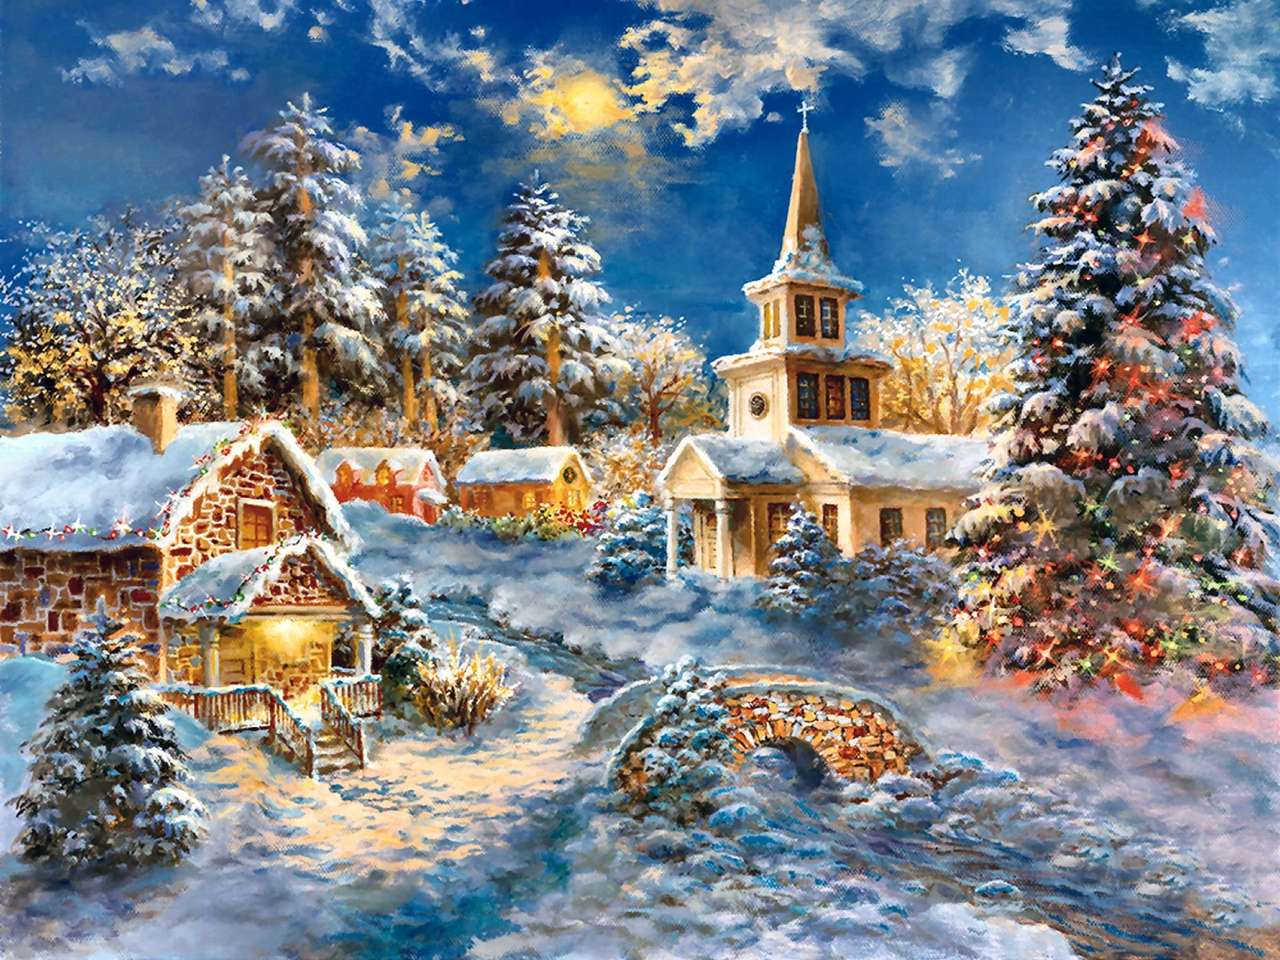 Картина Рождество в деревне пазл онлайн